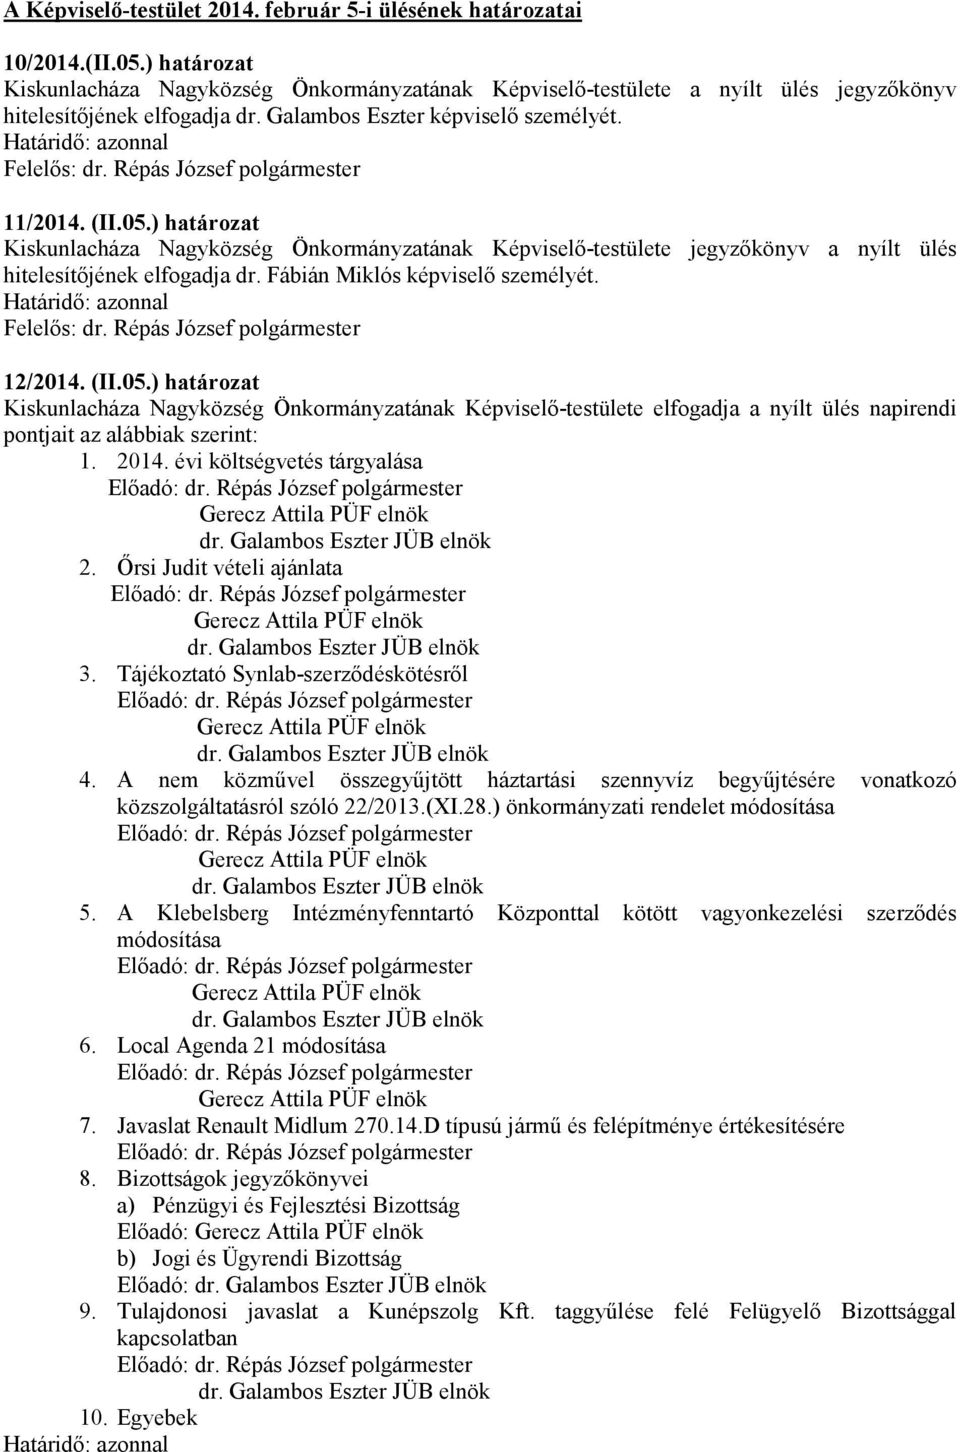 ) határozat Kiskunlacháza Nagyközség Önkormányzatának Képviselő-testülete jegyzőkönyv a nyílt ülés hitelesítőjének elfogadja dr. Fábián Miklós képviselő személyét. 12/2014. (II.05.